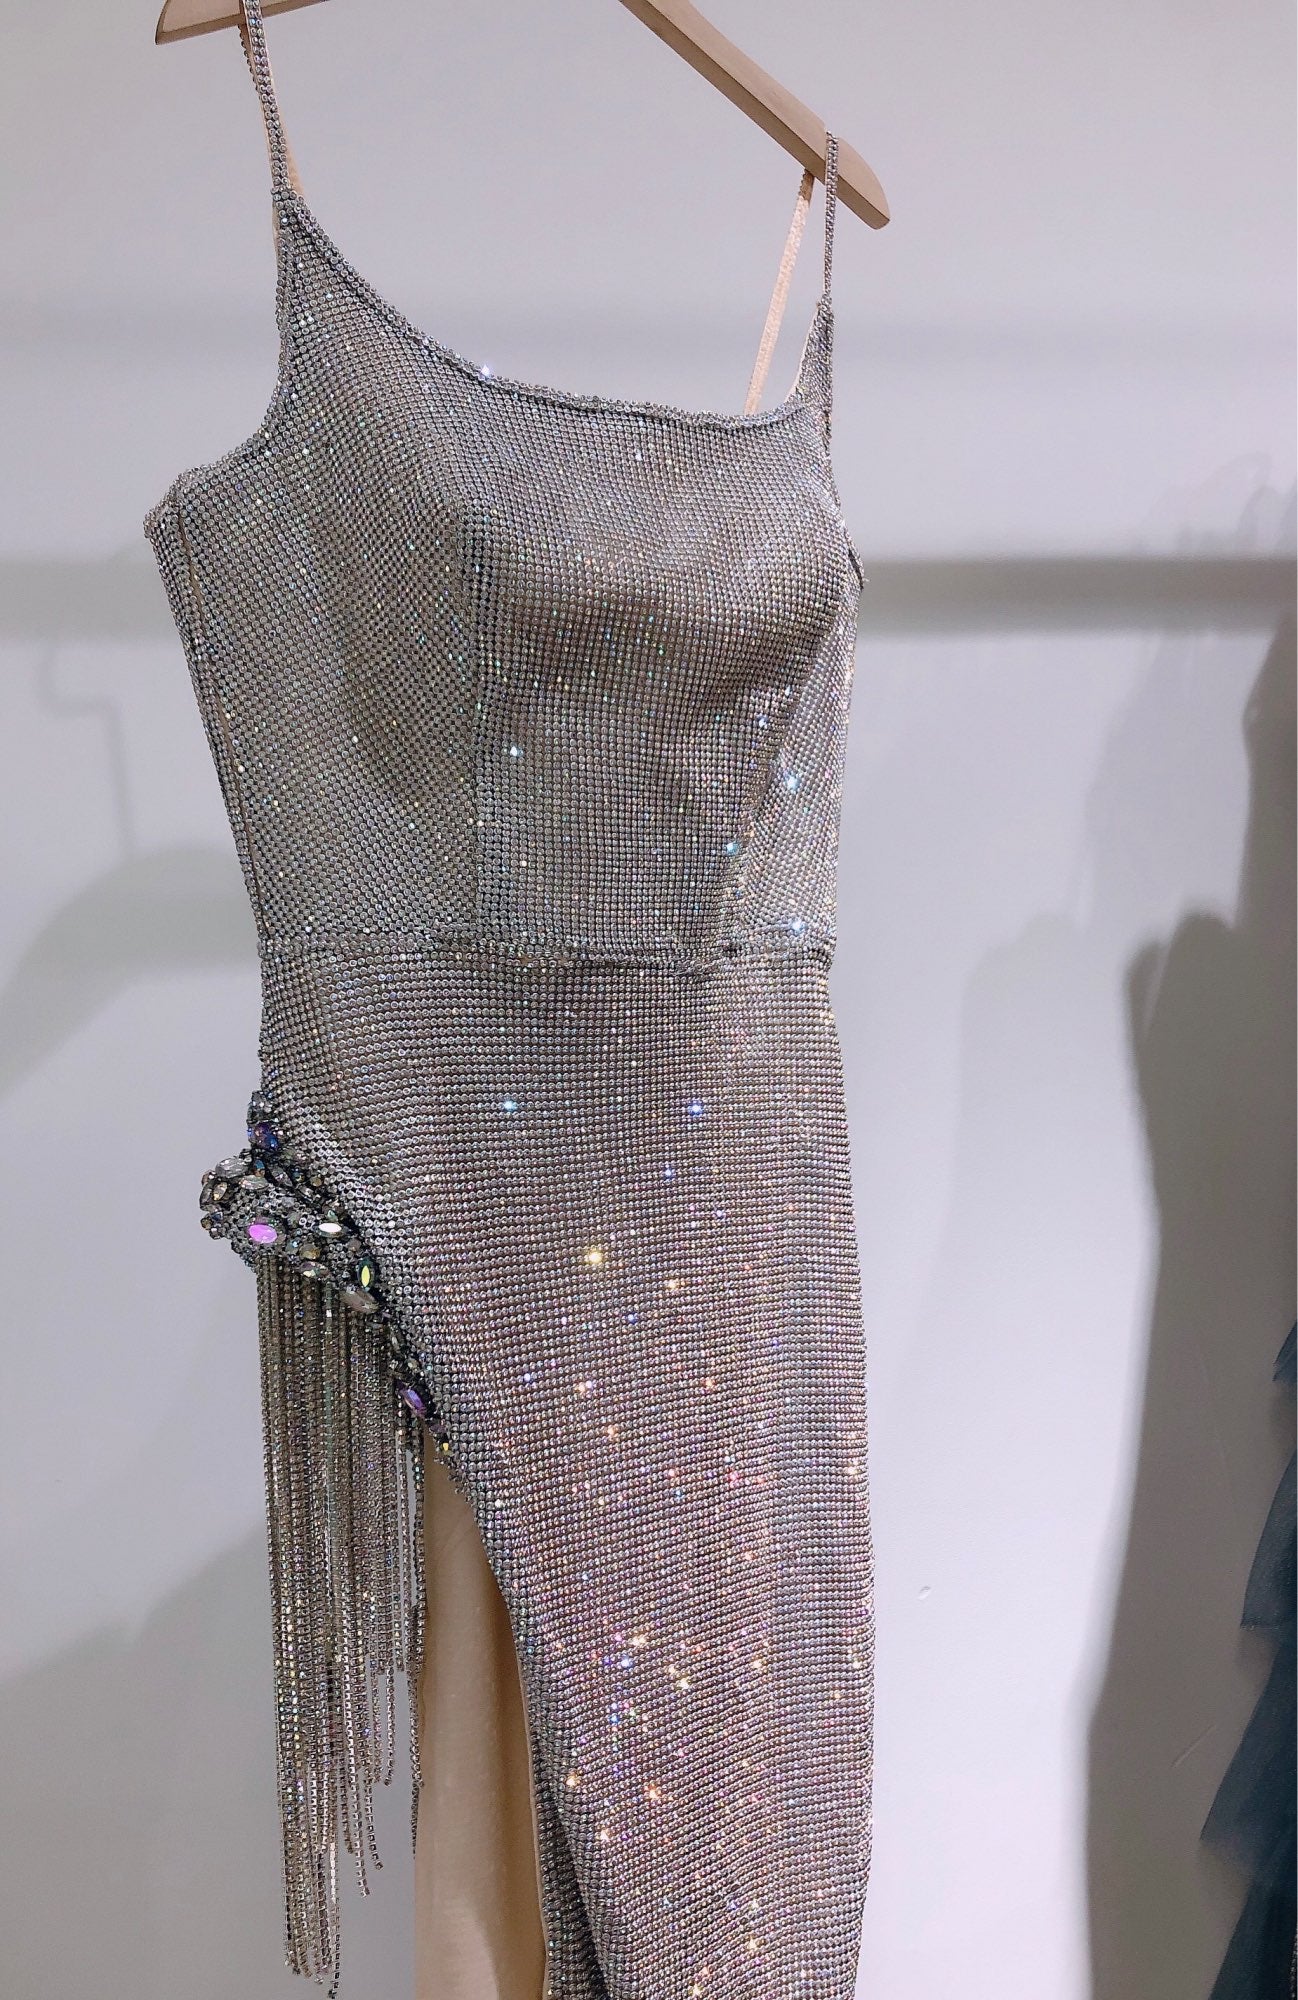 Shiny Crystal Silver Maxi Dresses